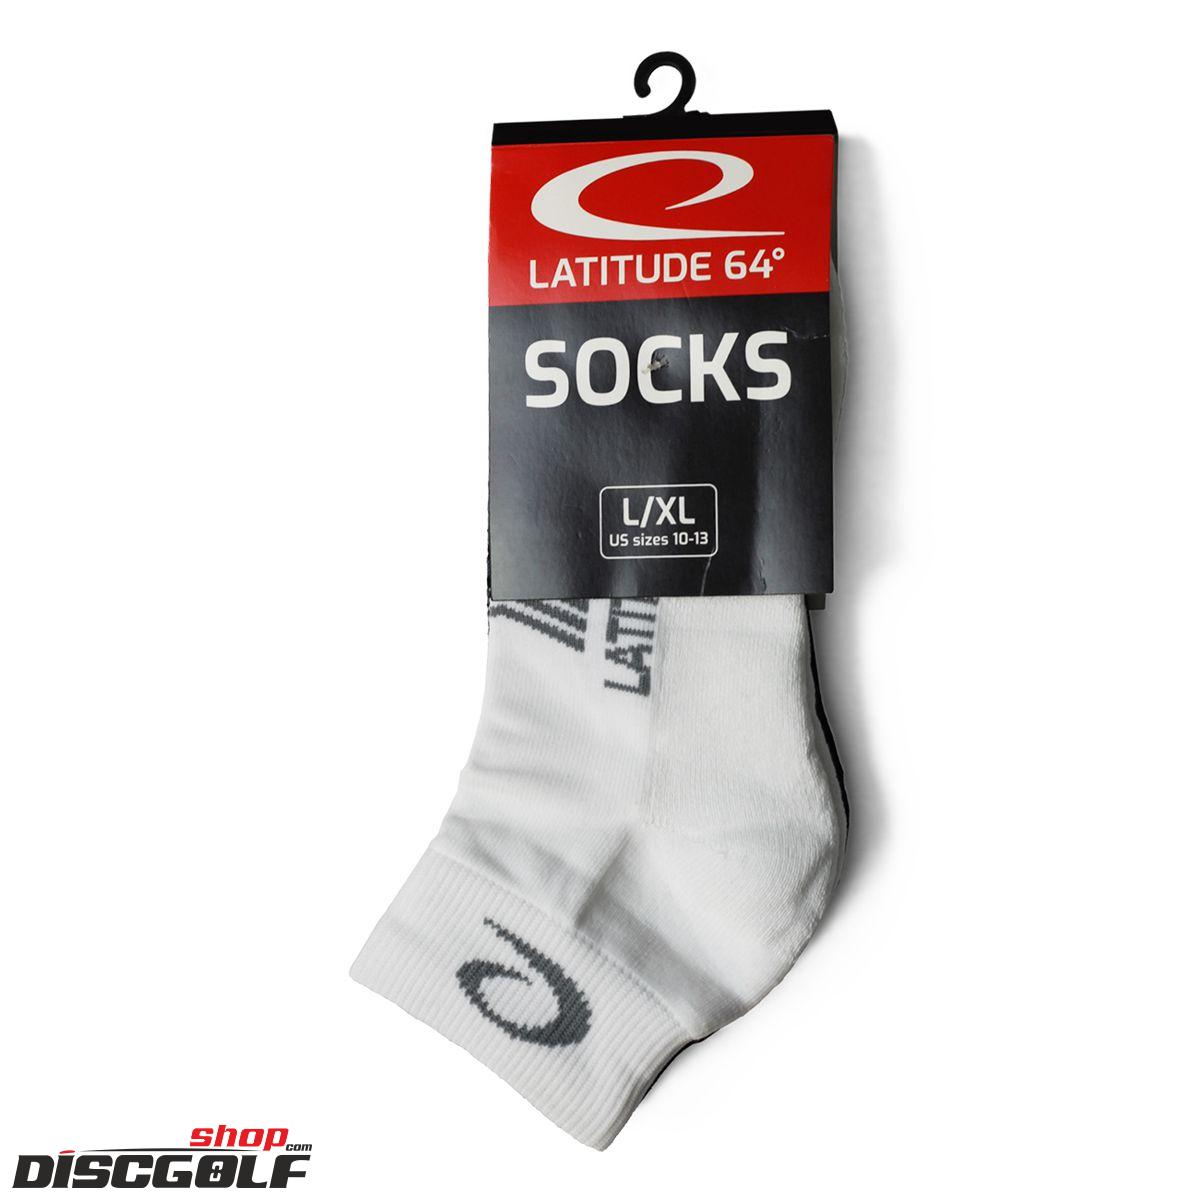  Latitude 64º Ponožky 2 páry - velikost L/XL 10-13